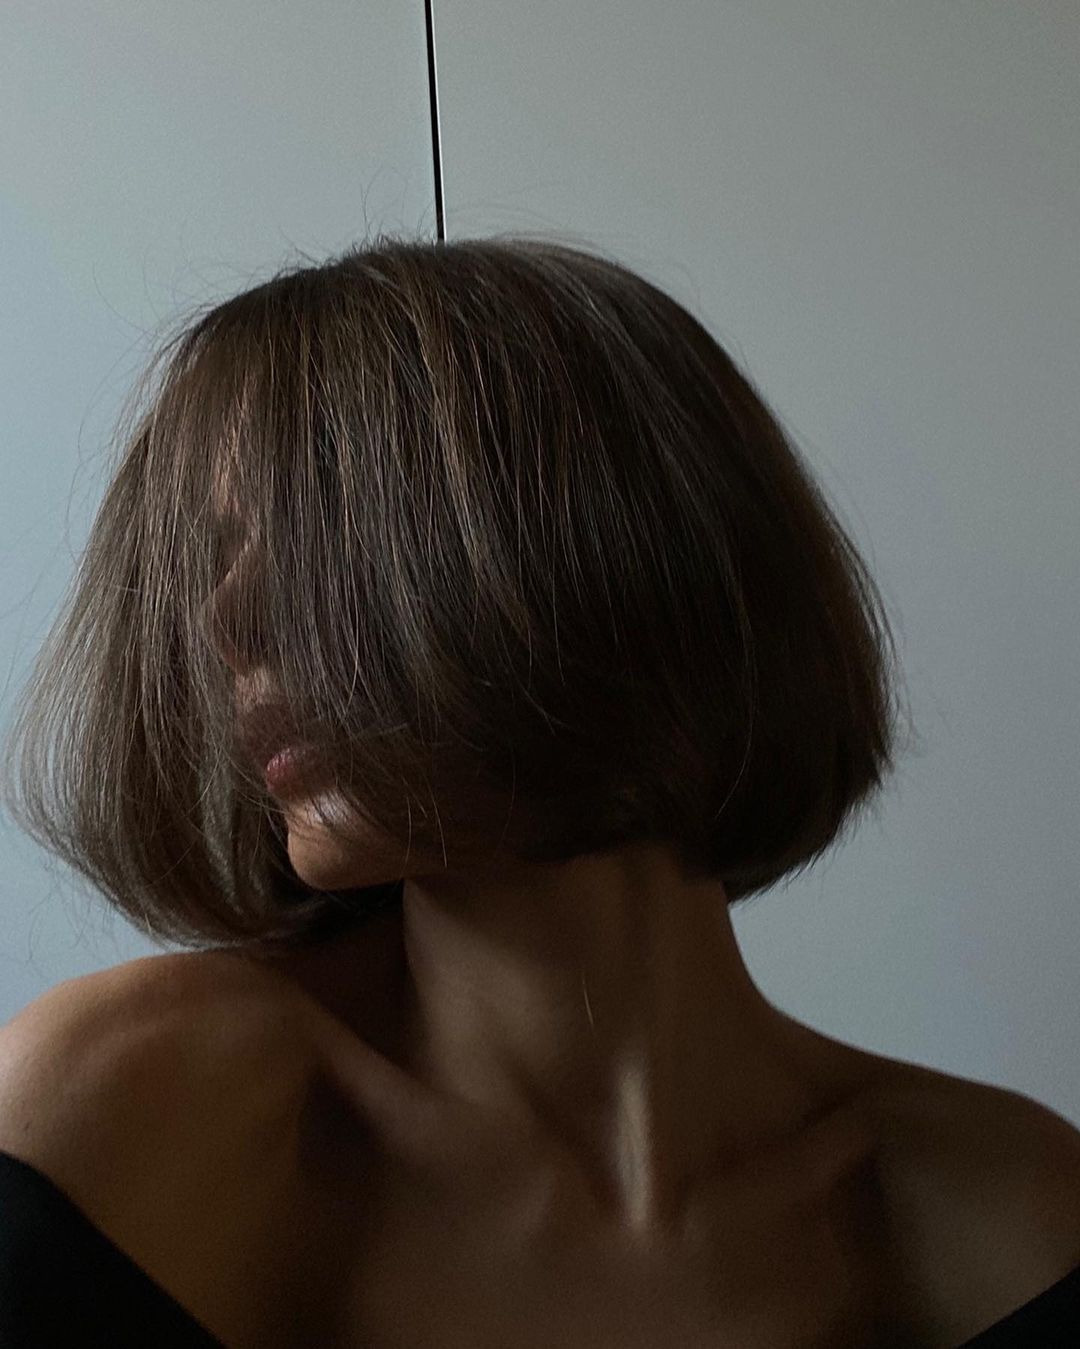 Kristina Khoronzhuk'tan Sara Sampaio'ya Haftanın Güzellik Instagramları